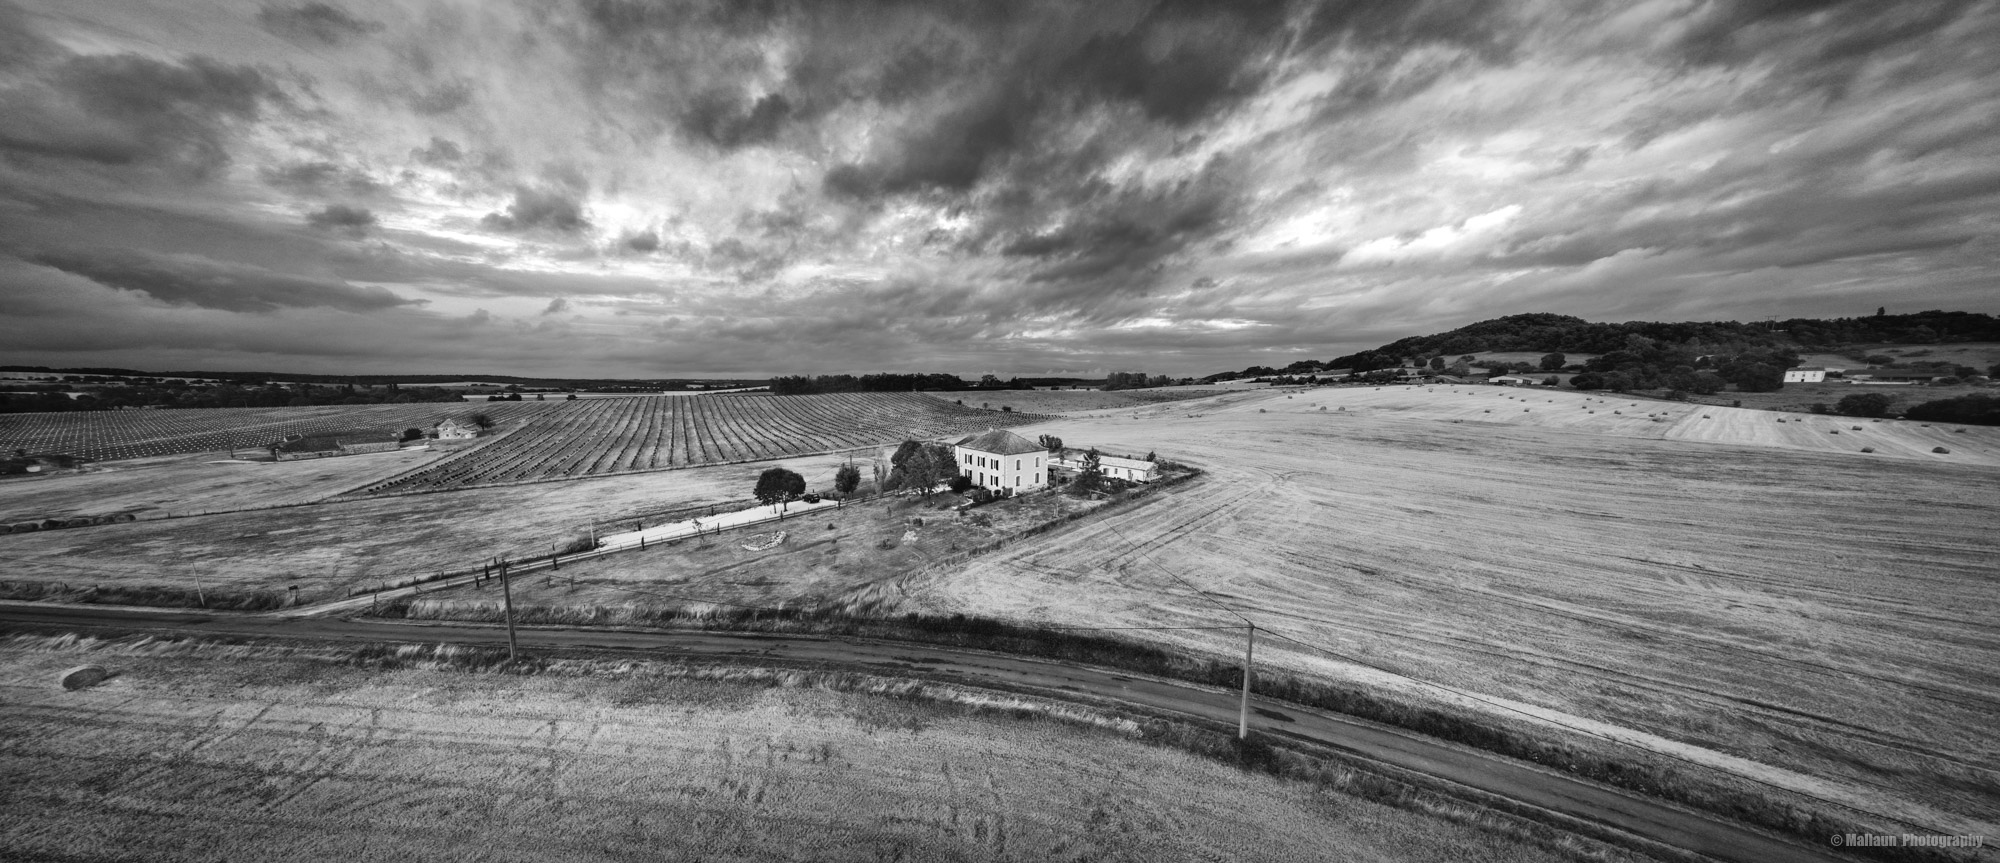 Drohnen-Panorama von Adliswil mit der Mavic Pro 2 © Mallaun Photography